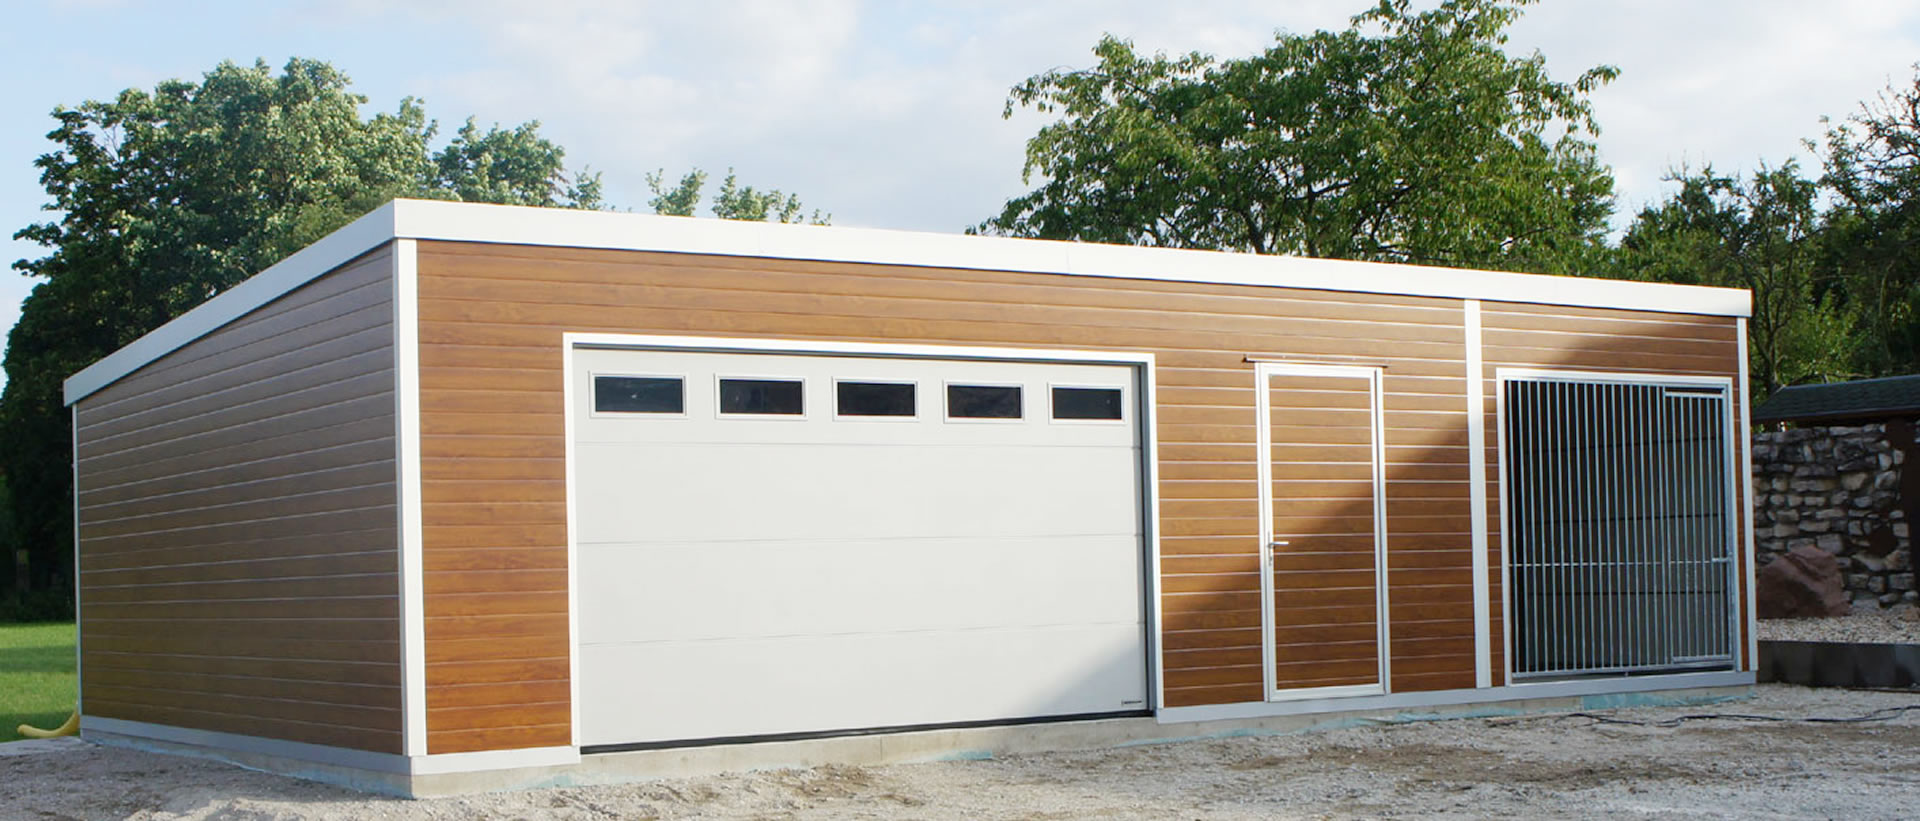 Eine Garage aus Holz für historische Fahrzeuge